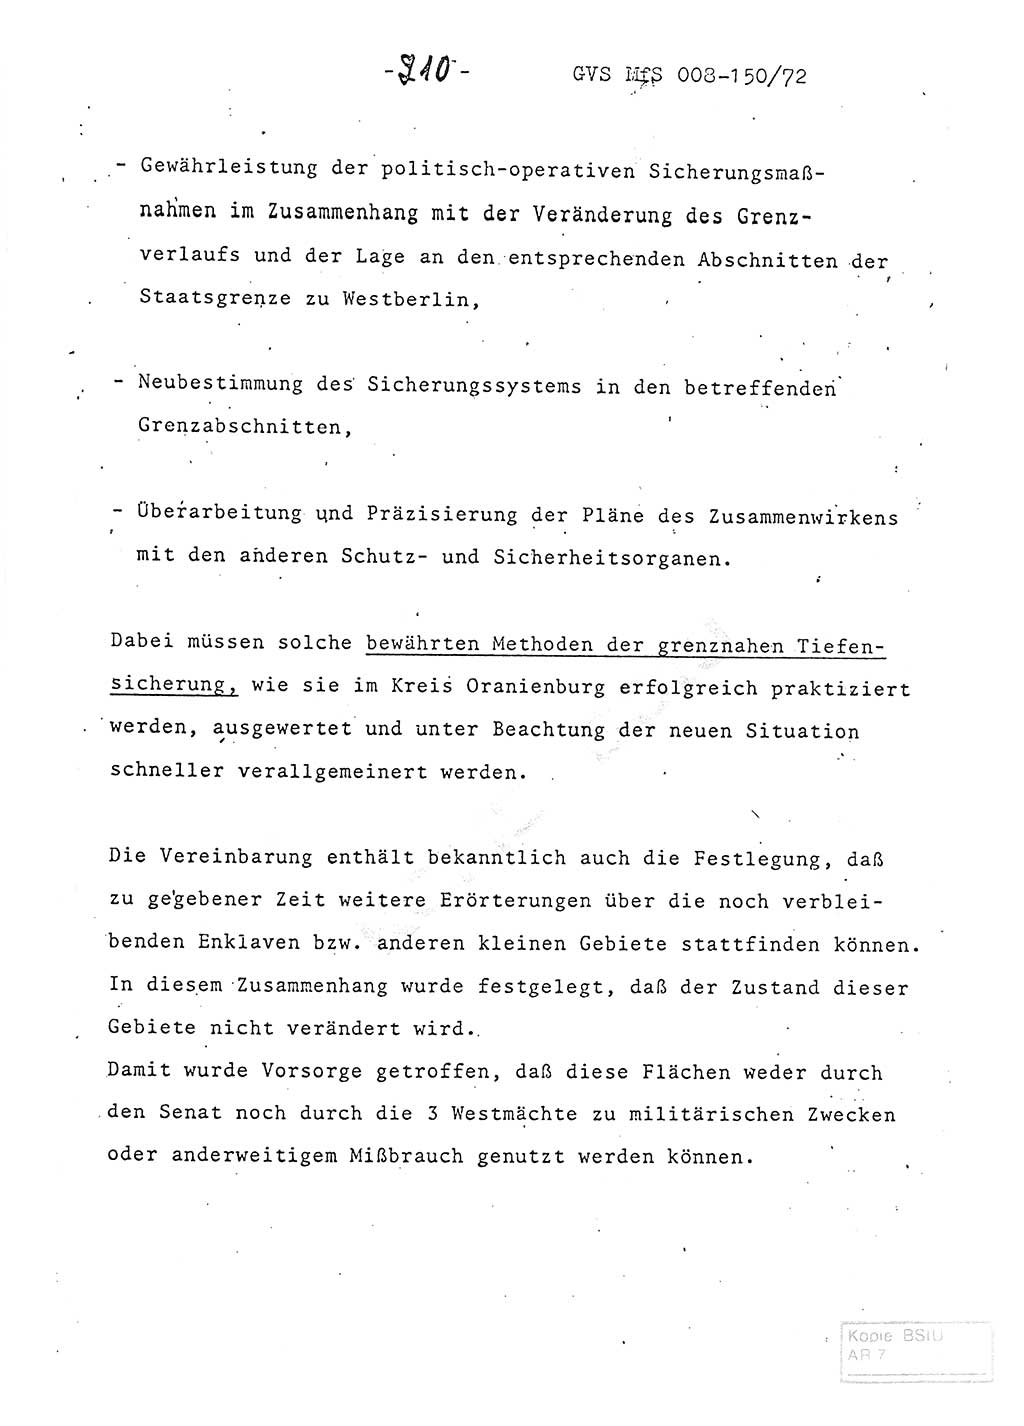 Referat (Entwurf) des Genossen Minister (Generaloberst Erich Mielke) auf der Dienstkonferenz 1972, Ministerium für Staatssicherheit (MfS) [Deutsche Demokratische Republik (DDR)], Der Minister, Geheime Verschlußsache (GVS) 008-150/72, Berlin 25.2.1972, Seite 210 (Ref. Entw. DK MfS DDR Min. GVS 008-150/72 1972, S. 210)